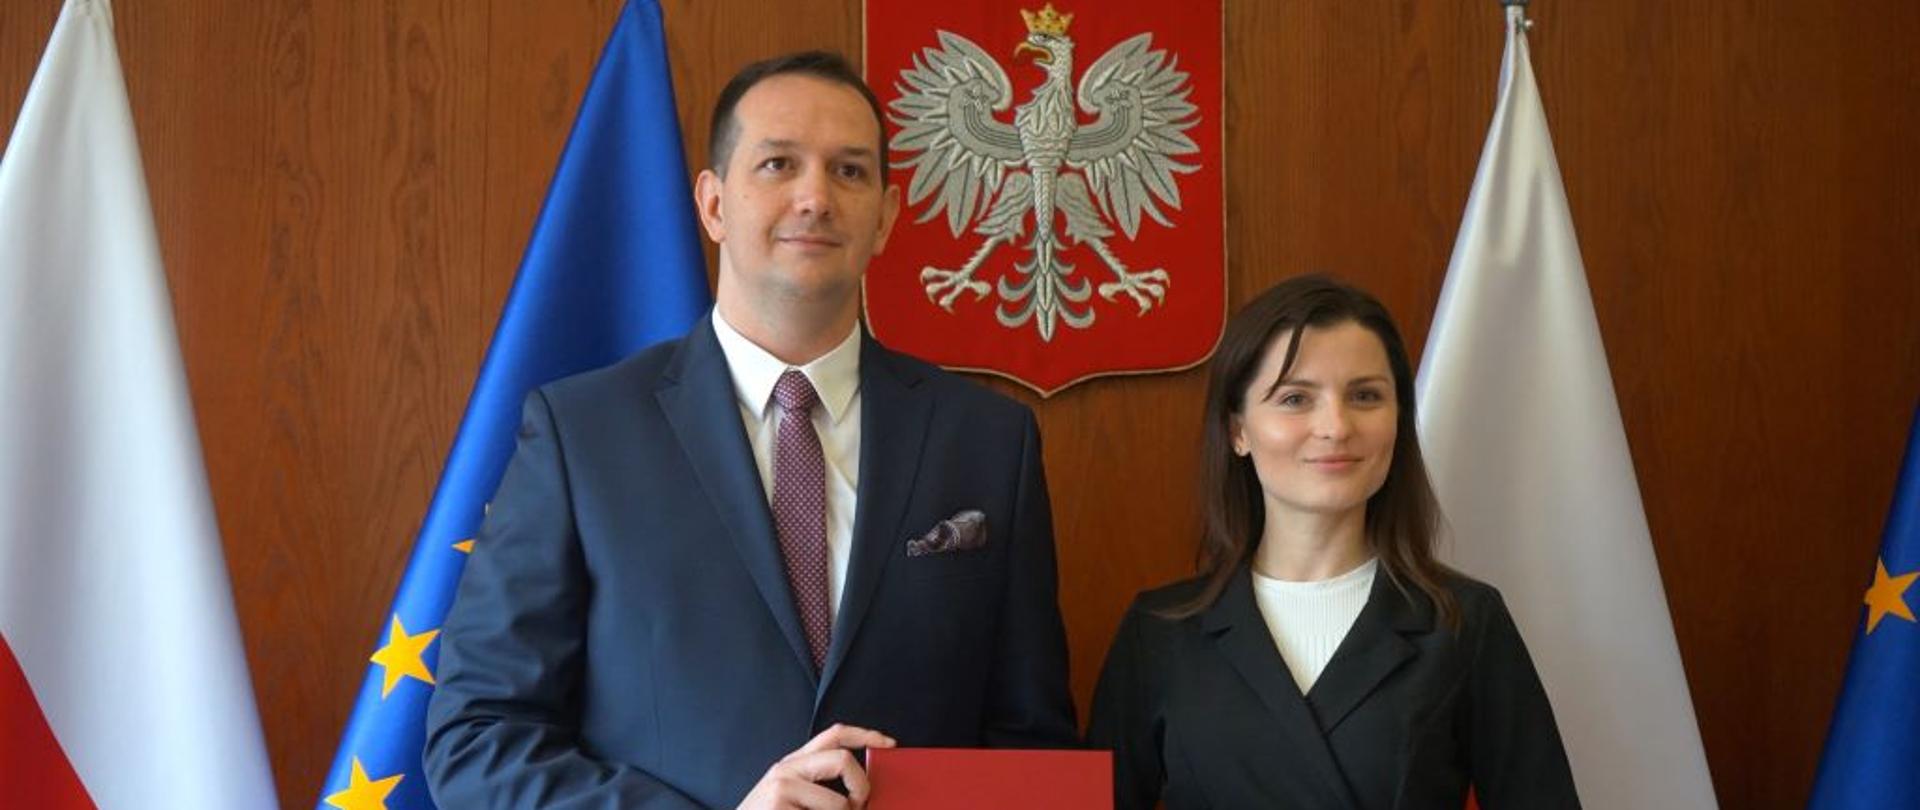 Mężczyzna w garniturze stoi obok kobiety i trzyma w ręku czerwoną teczkę z godłem narodowym. W tle flagi Polski i UE 